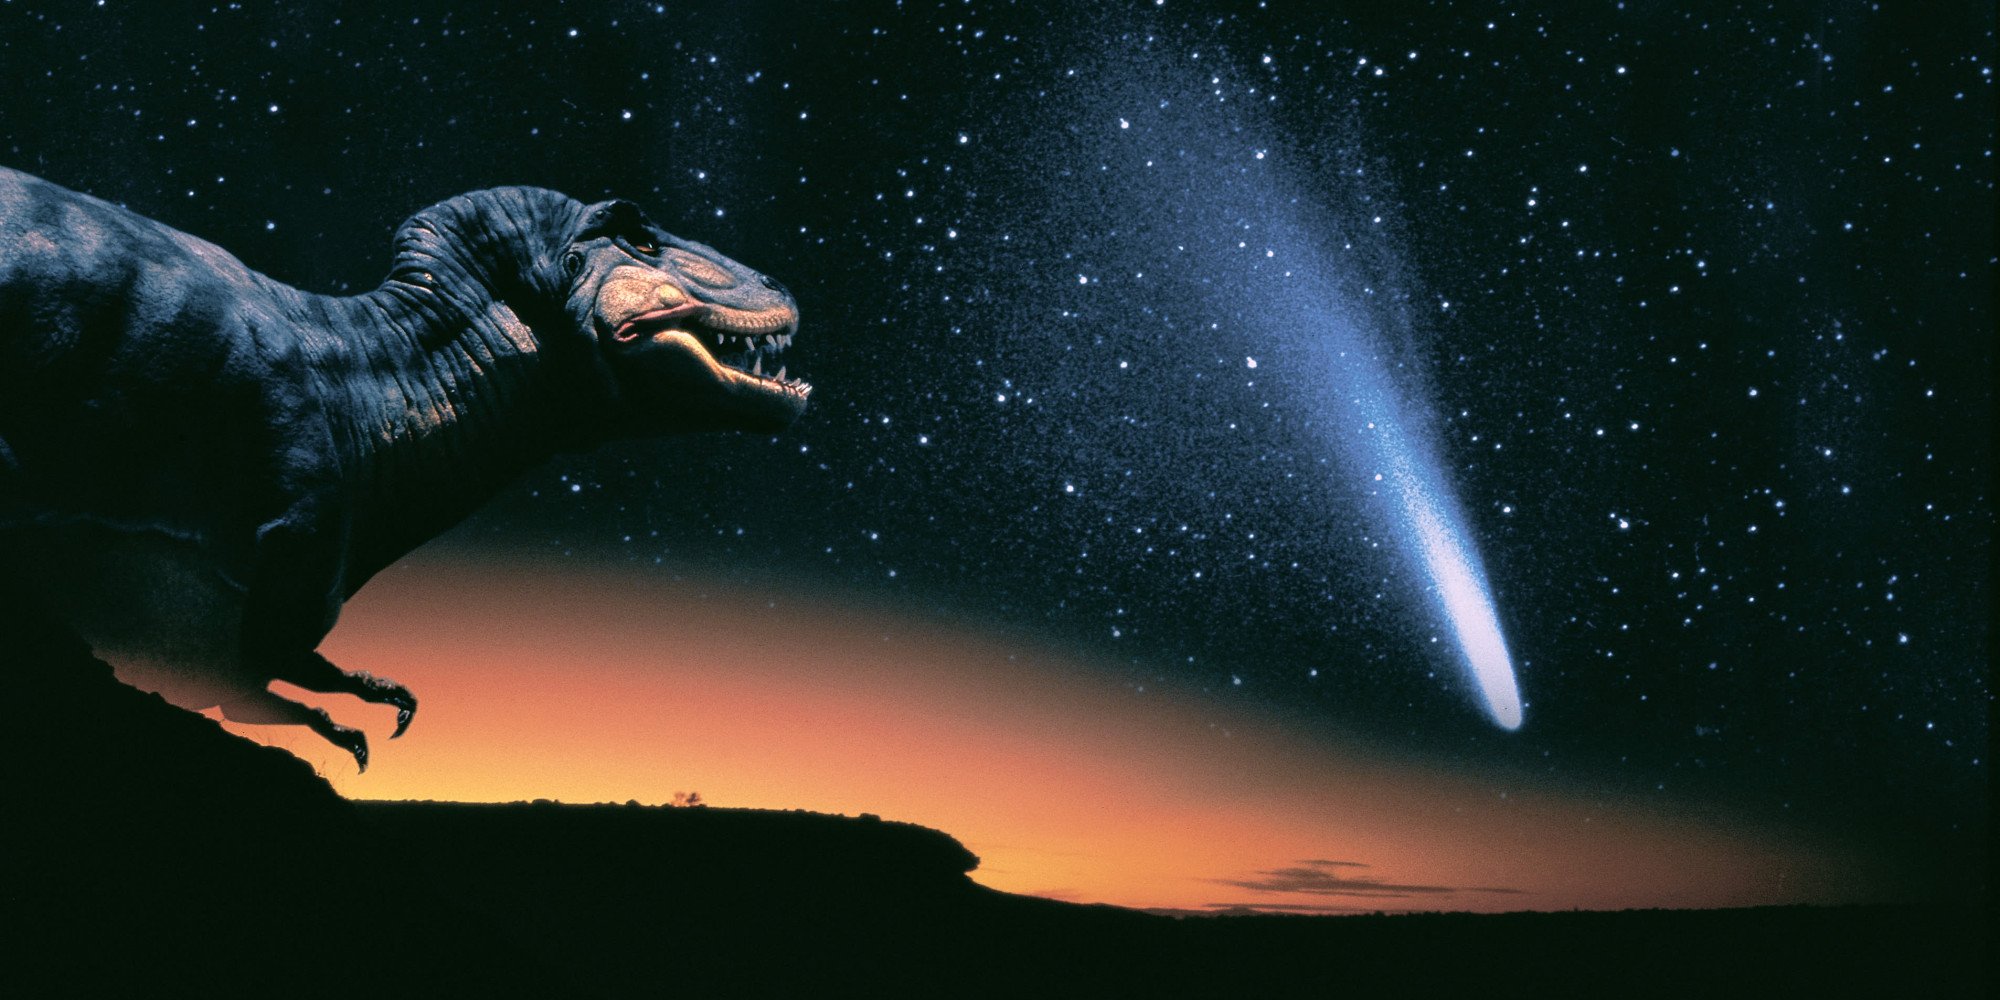 хороший динозавр кино причины исчезновения массовое вымирание вулкан астероид инфекция цветковые газы наука статья отвратительные мужики